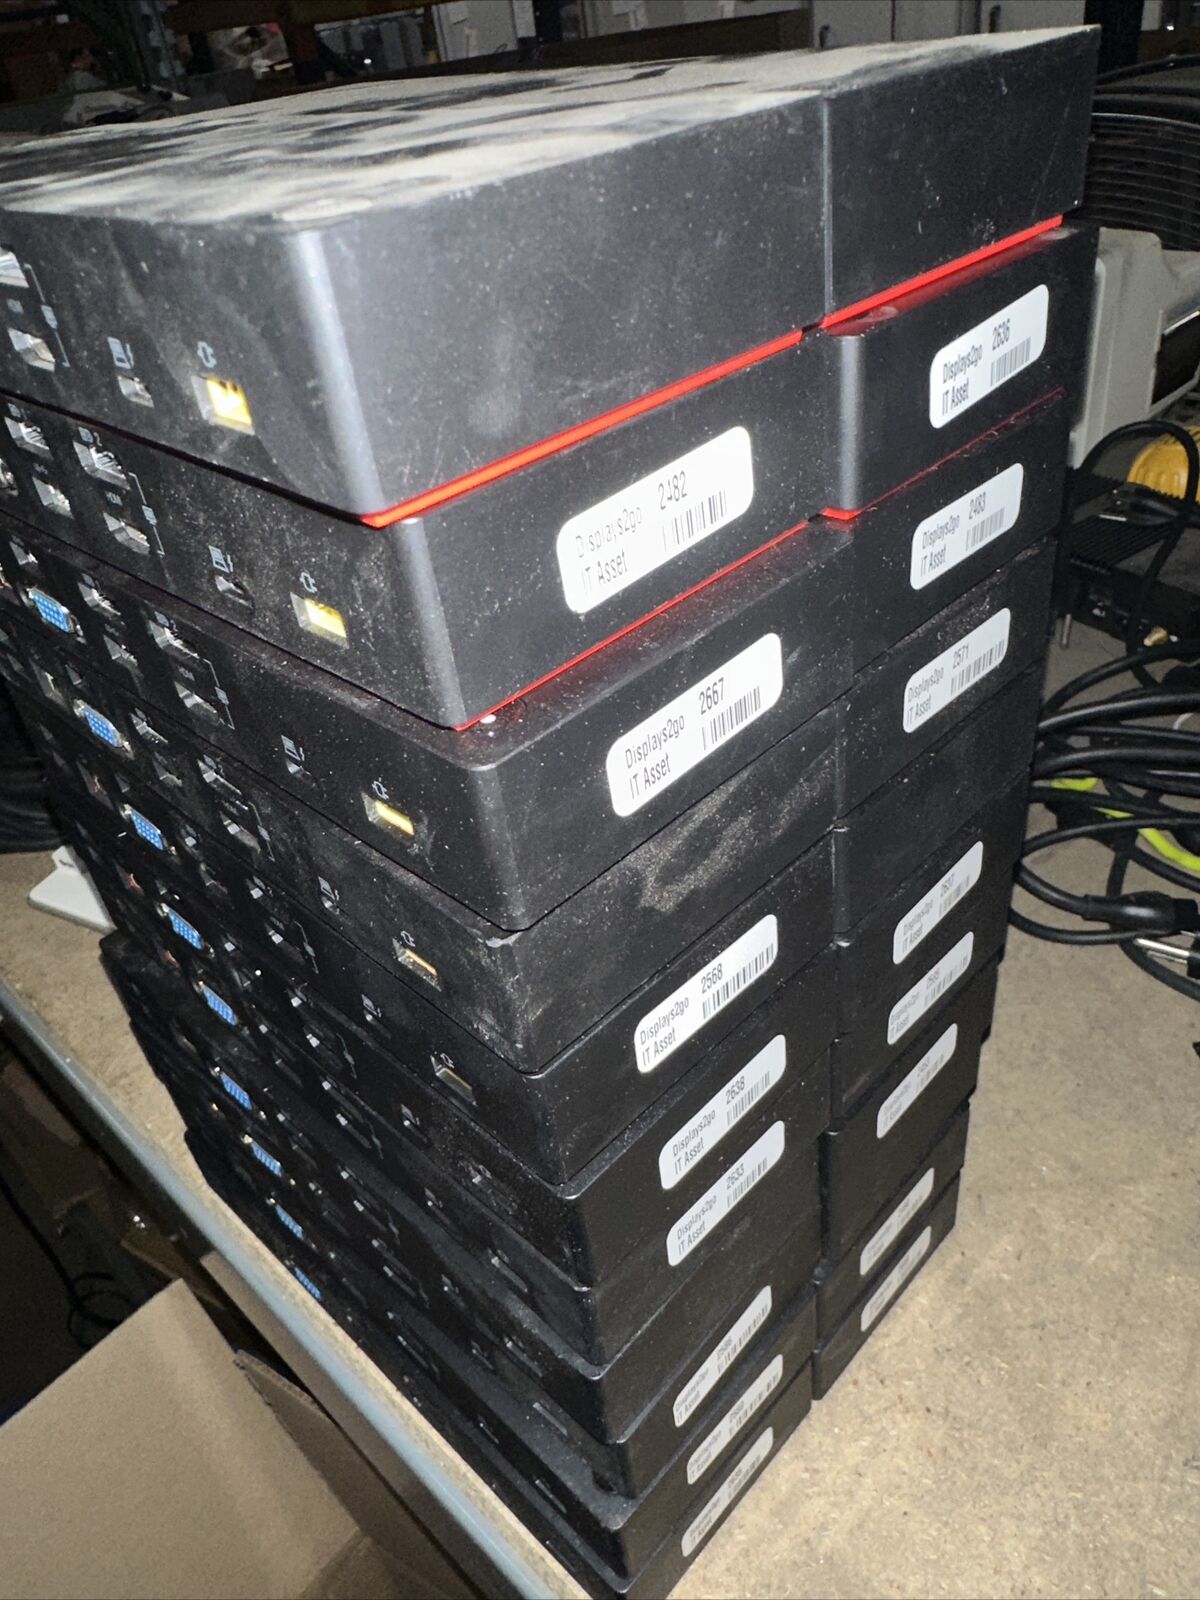 LOT of 22 Lenovo ThinkPad Thunderbolt 3 Dock (40AC0135US) - No adapters Untested